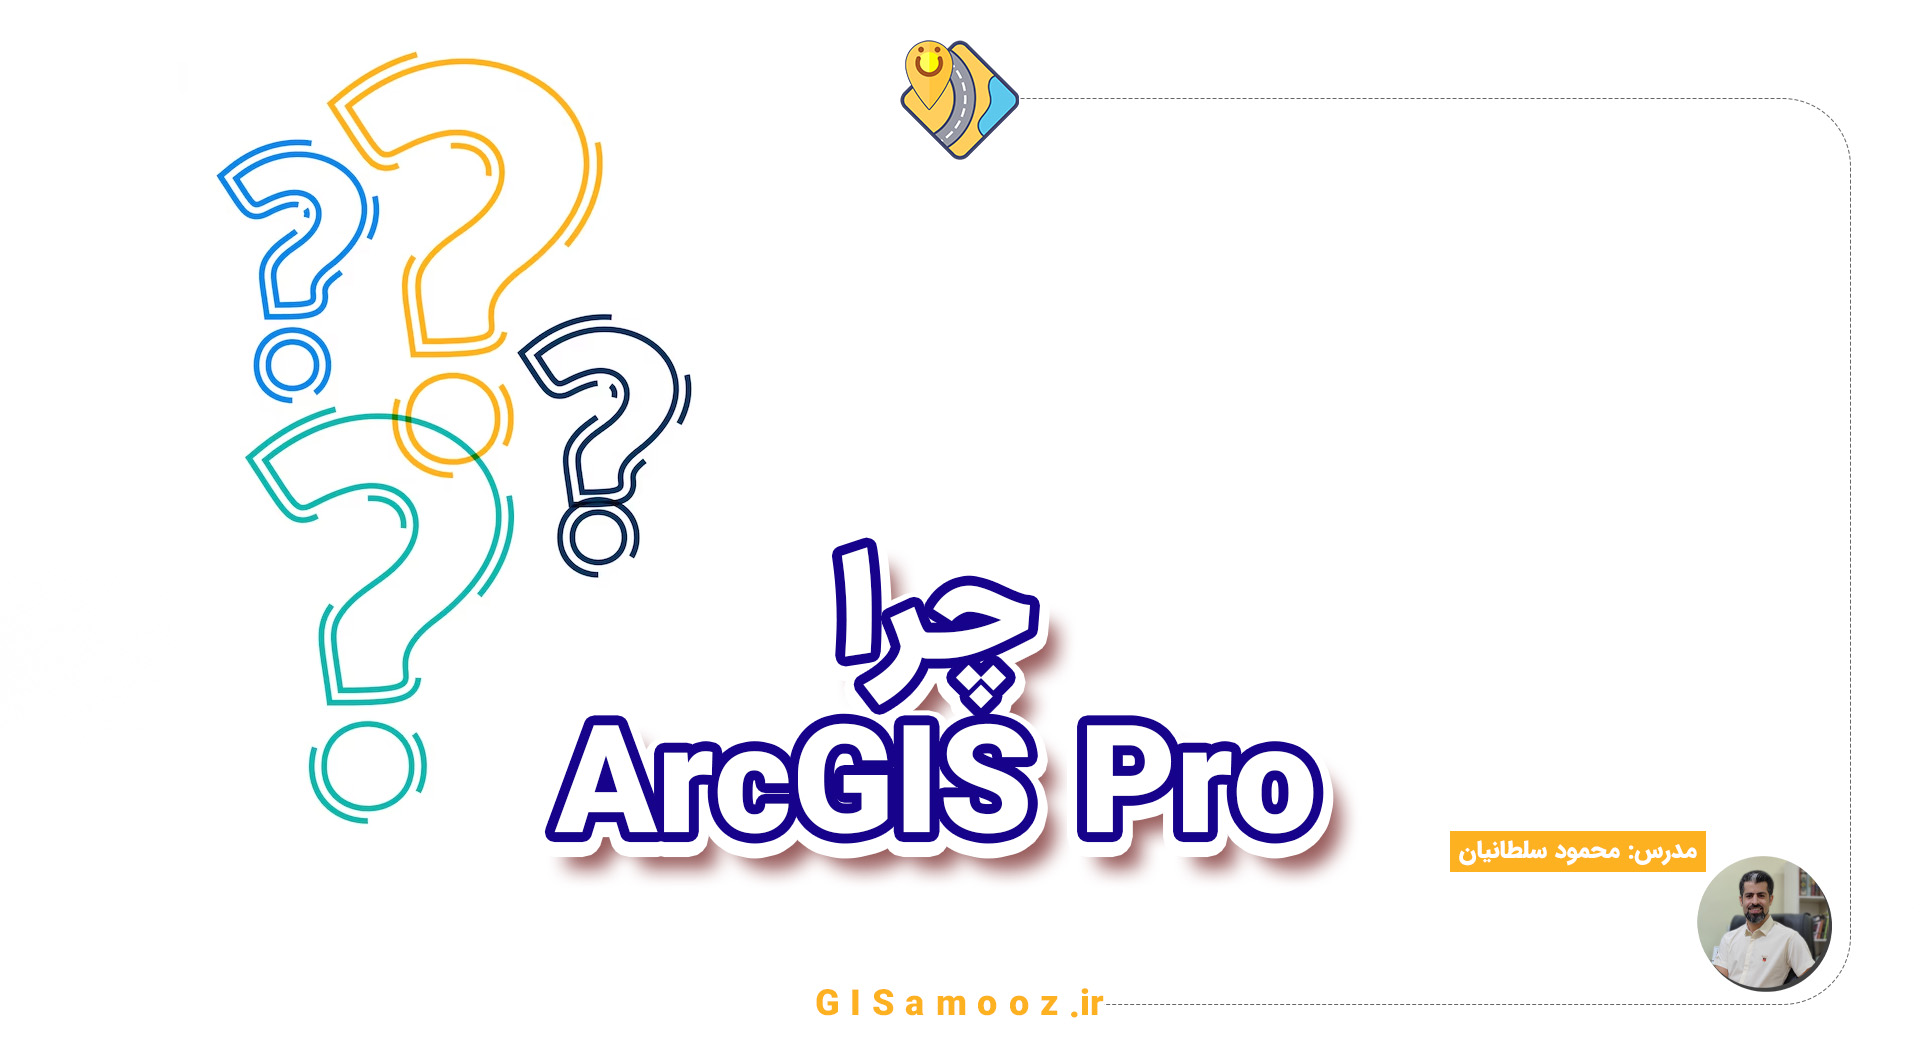 چرا باید ArcGIS Pro را یاد بگیرم؟